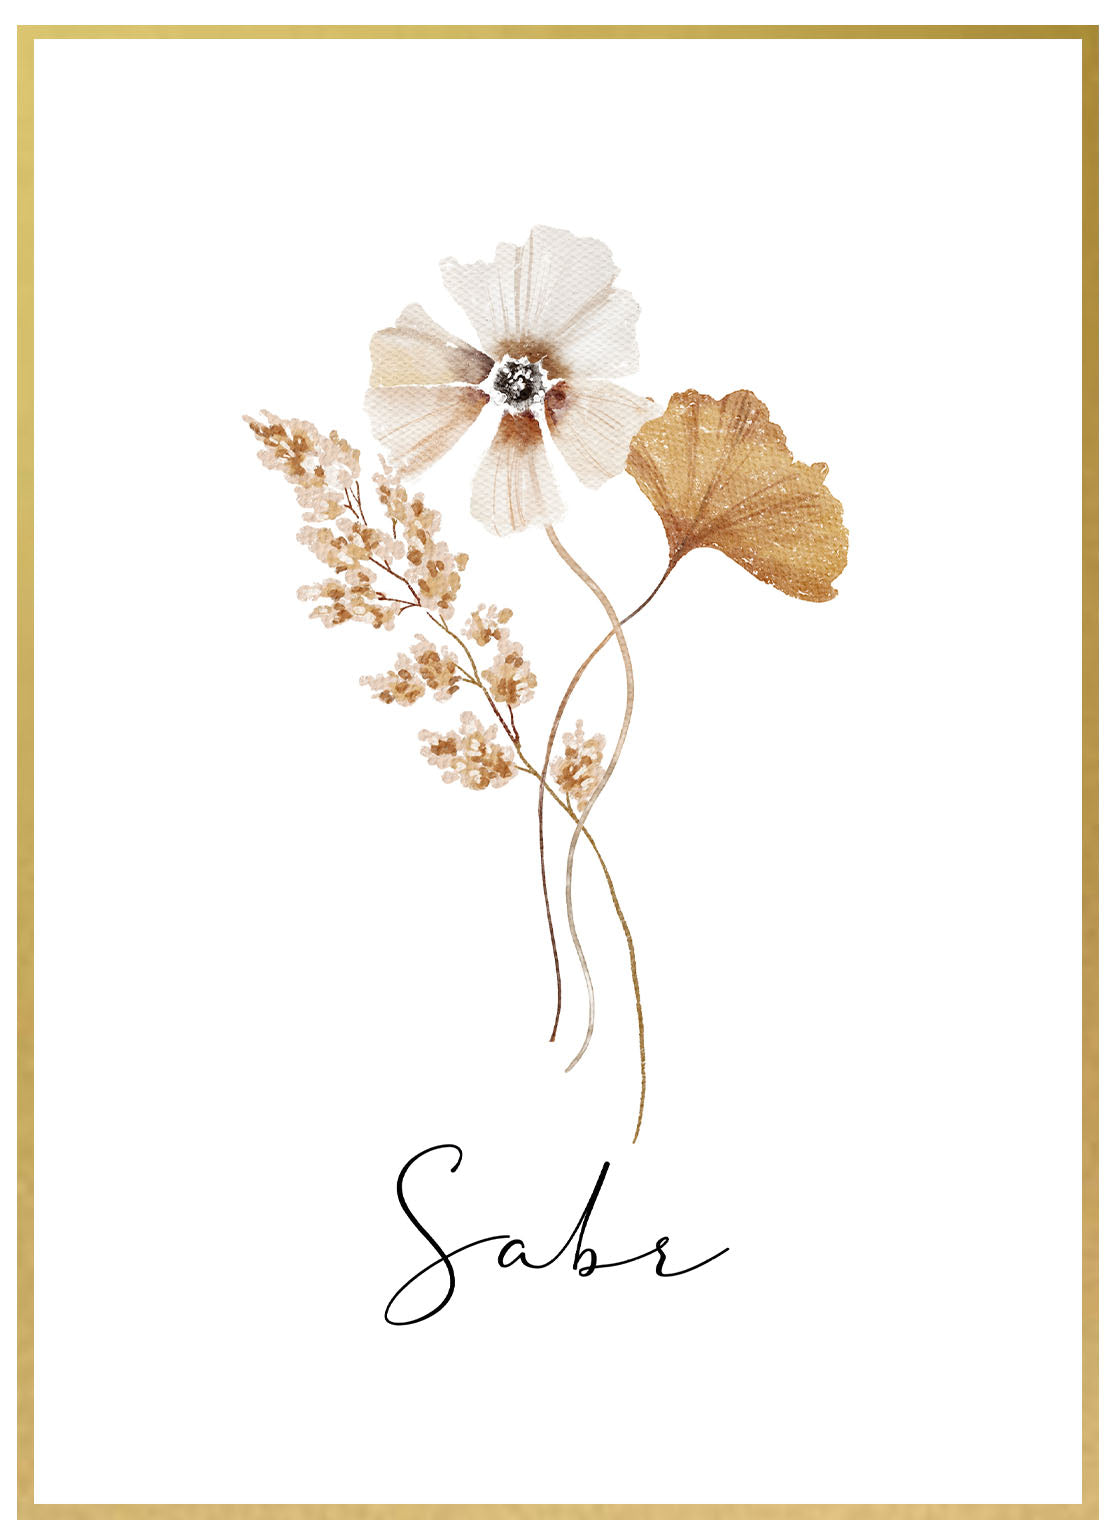 Sabr Flower